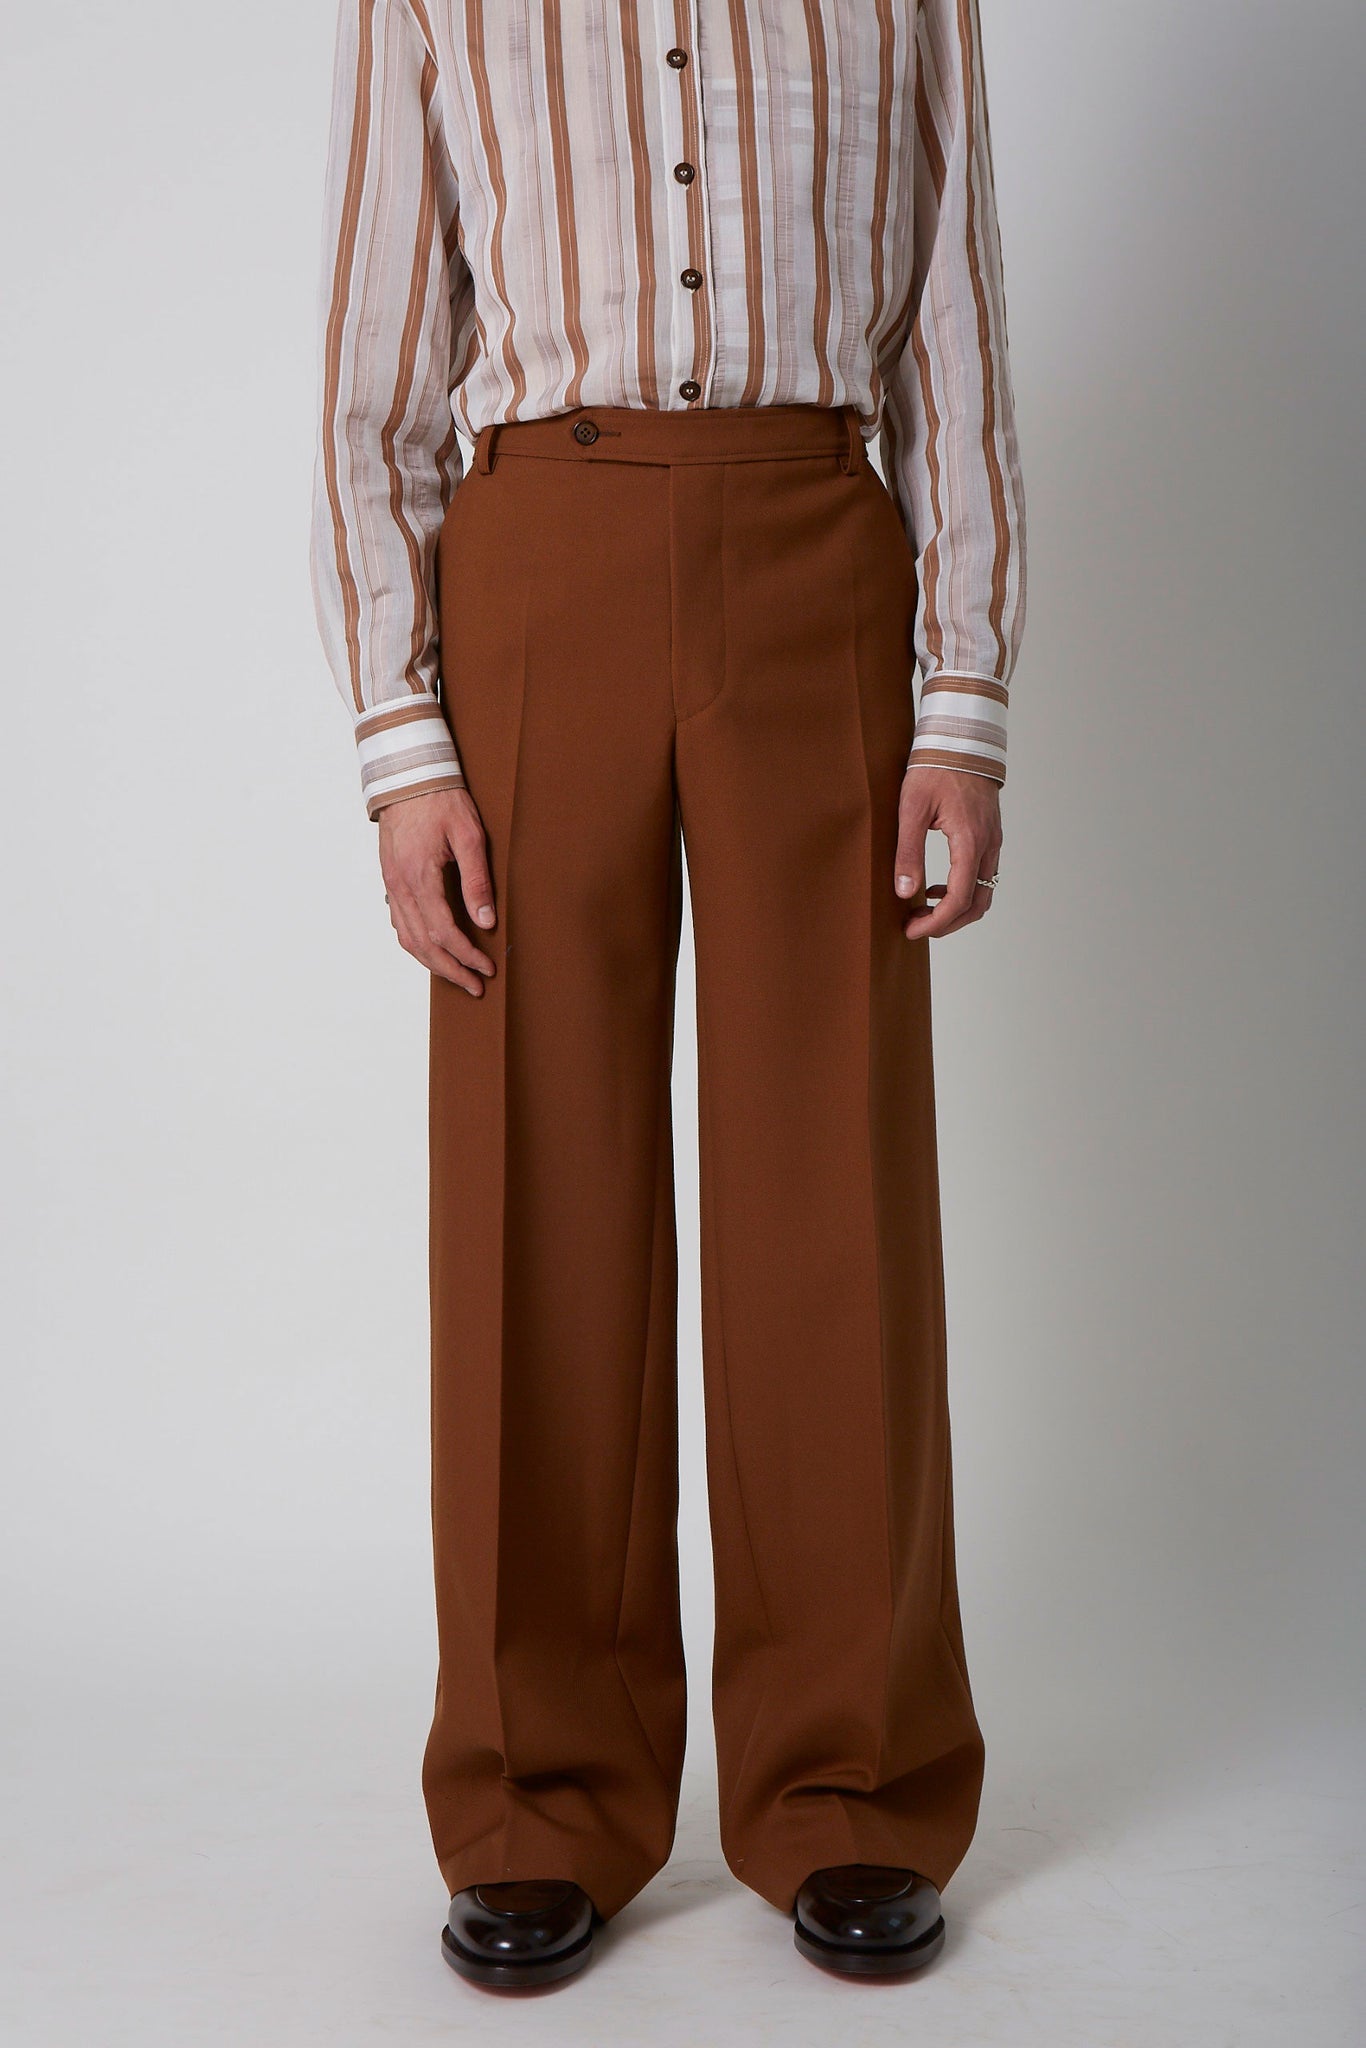 BELGRADO trousers 160U (M) / PRE-ORDER